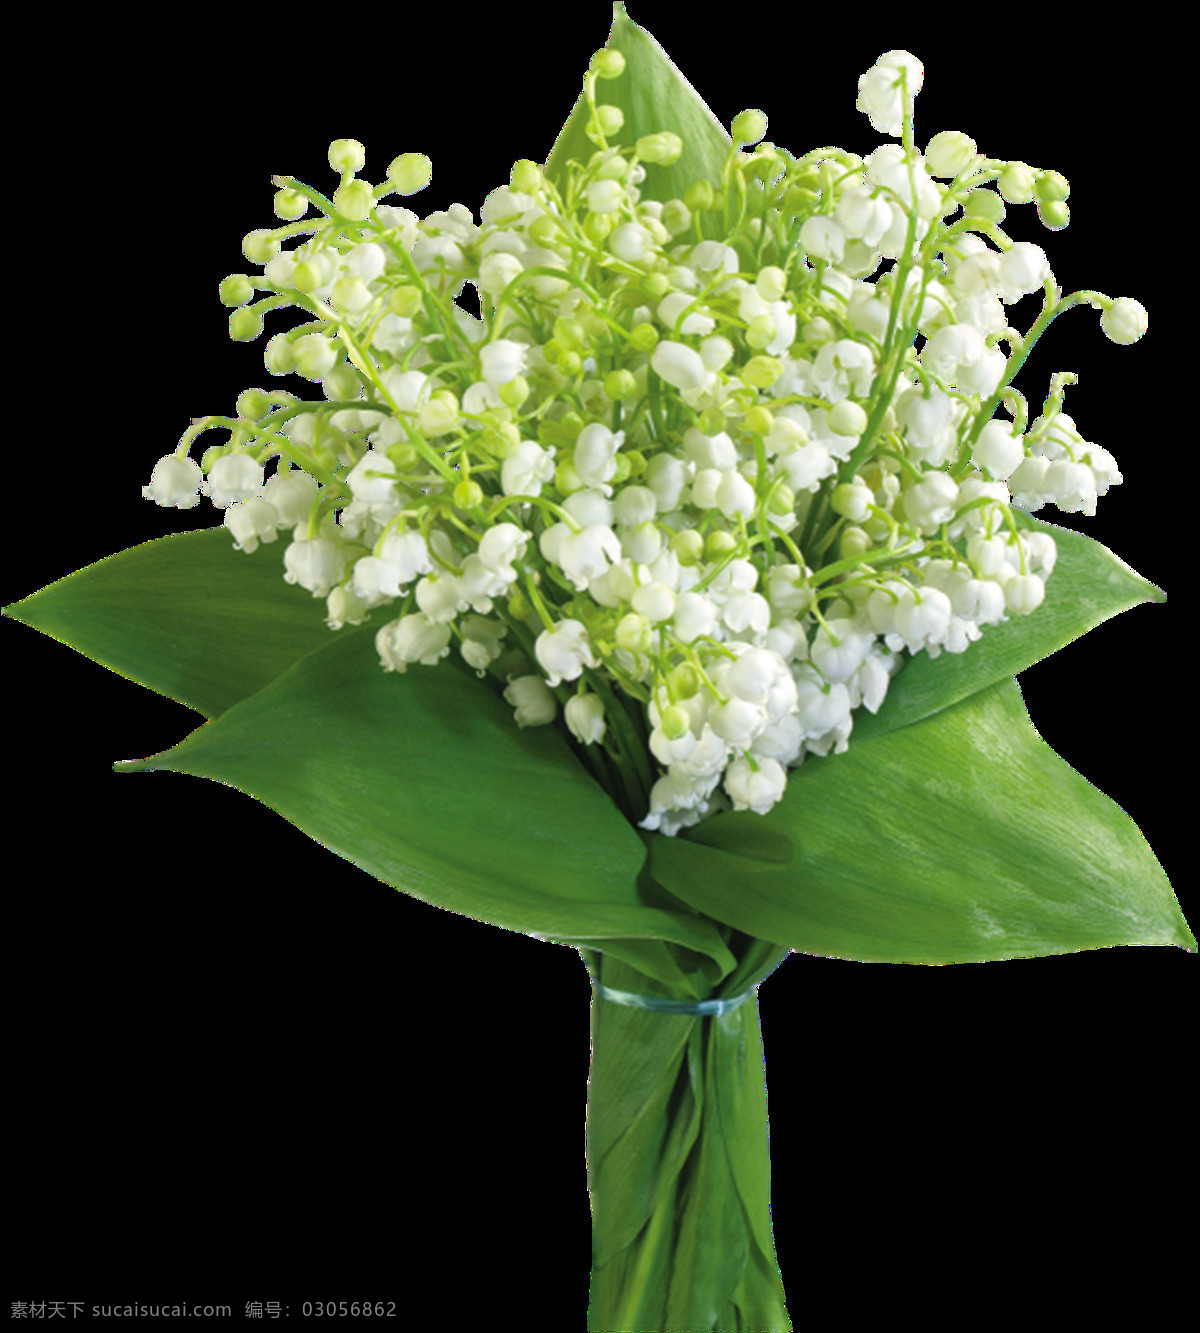 漂亮 白色 铃 兰花 绿色 叶子 植物 铃兰花 花束 漂亮的铃兰花